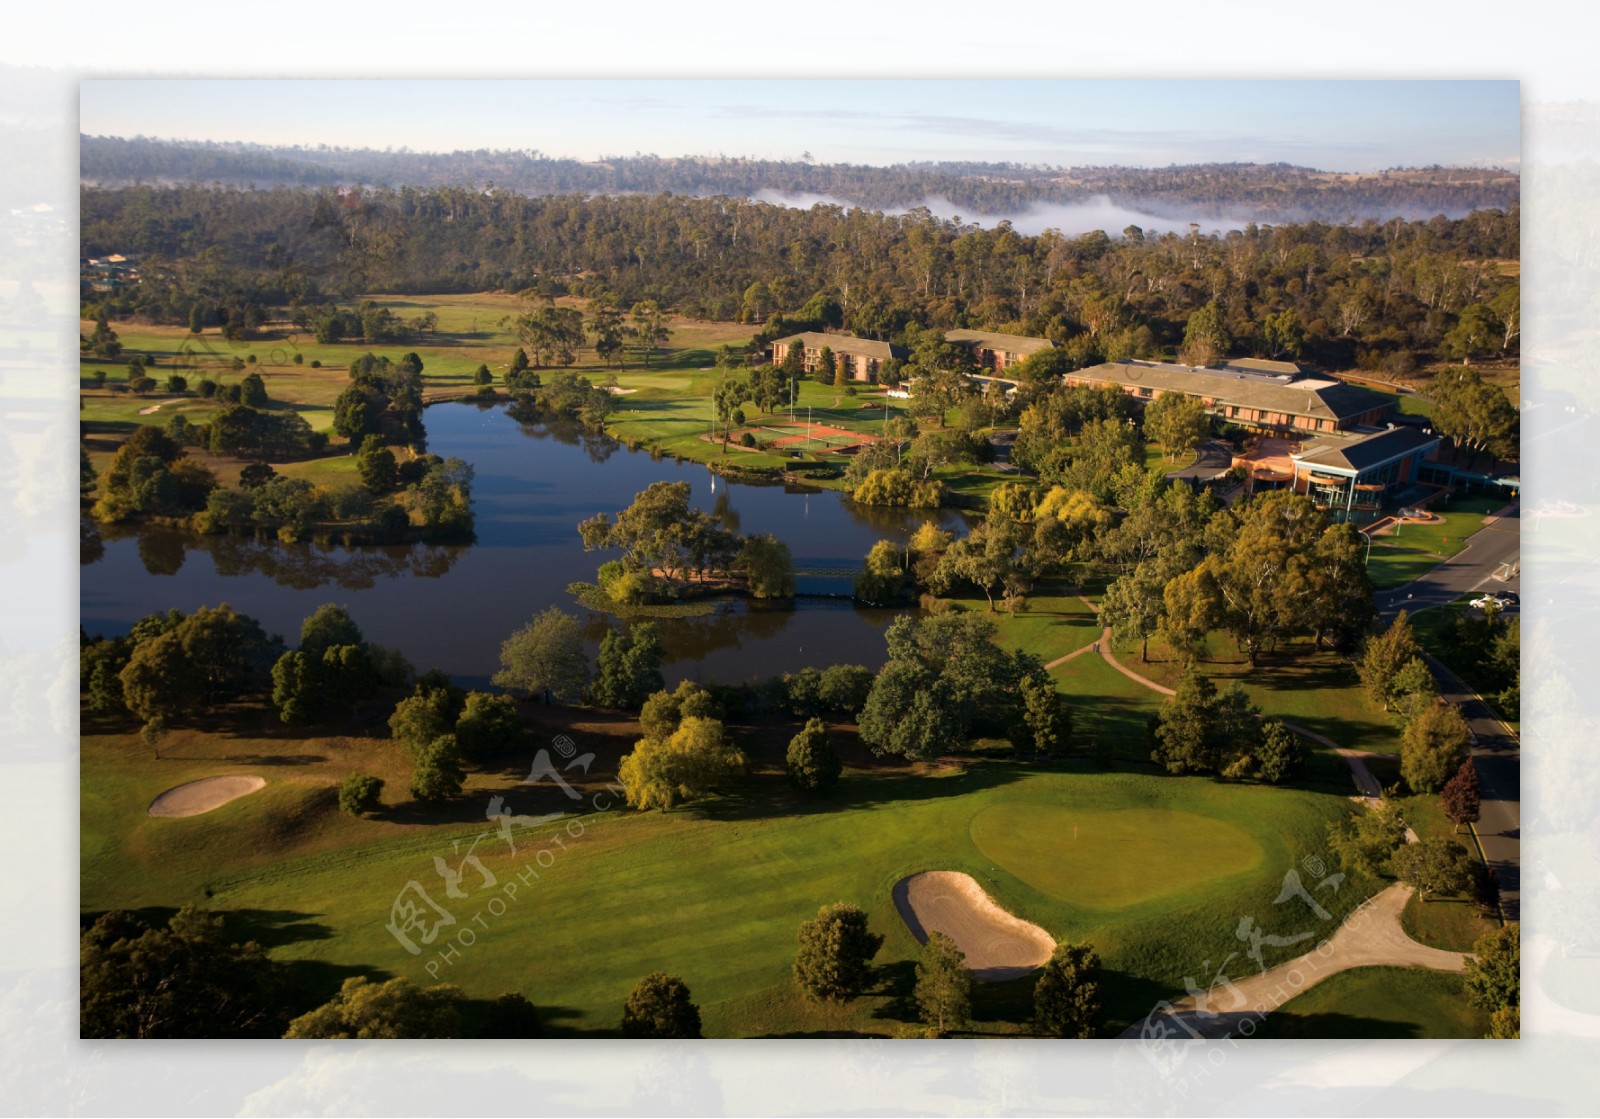 高尔夫球场美景鸟瞰图图片